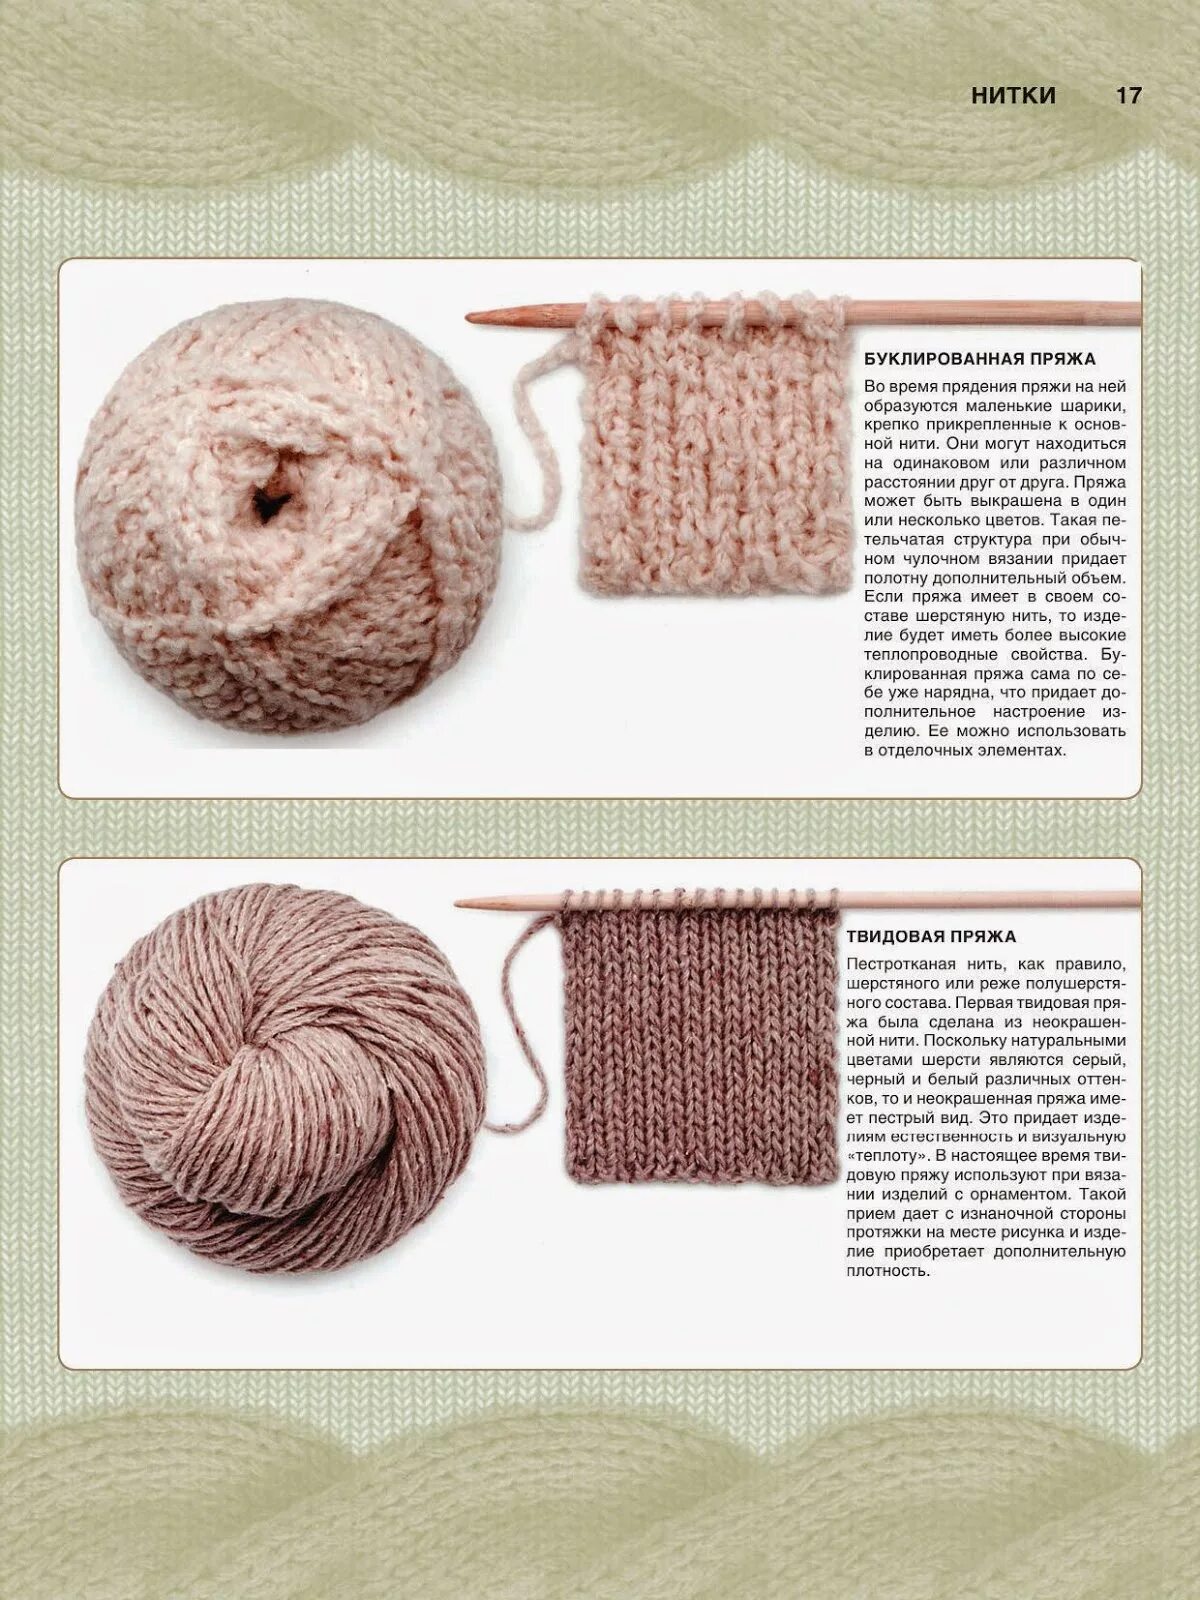 Разновидность ниток для вязания. Разновидности пряжи для вязания. Название ниток для вязания. Название пряжи для вязания спицами.